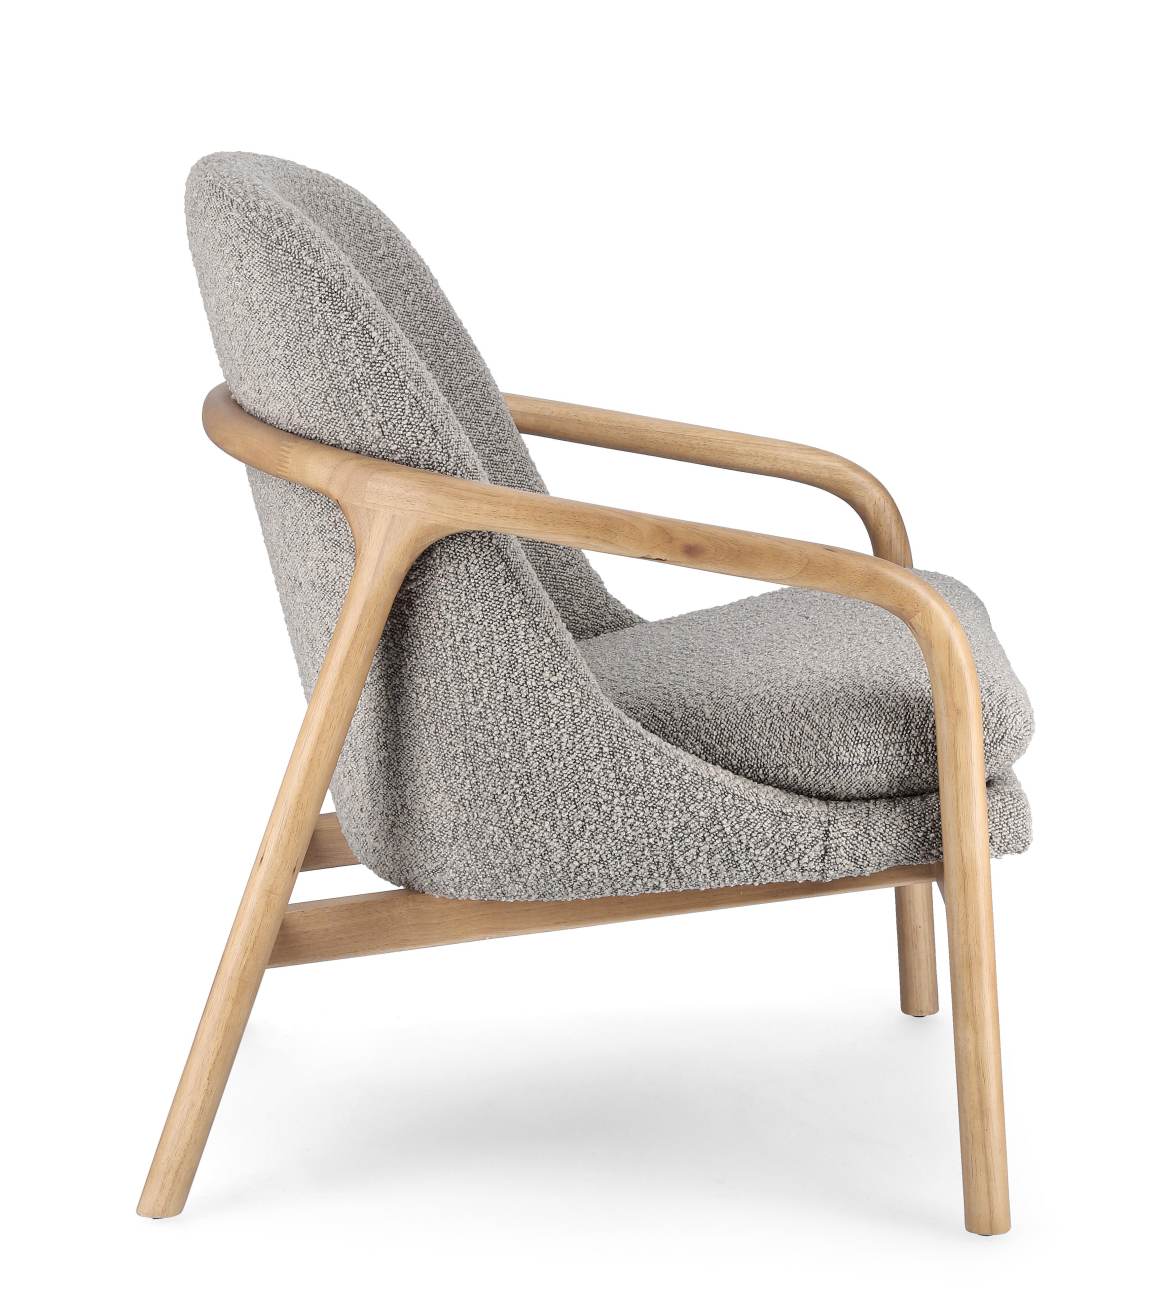 Der Sessel Elaide überzeugt mit seinem modernen Stil. Gefertigt wurde er aus Bouclè-Stoff, welcher einen grauen Farbton besitzt. Das Gestell ist aus Kautschukholz und hat eine natürliche Farbe. Der Sessel verfügt über eine Armlehne.